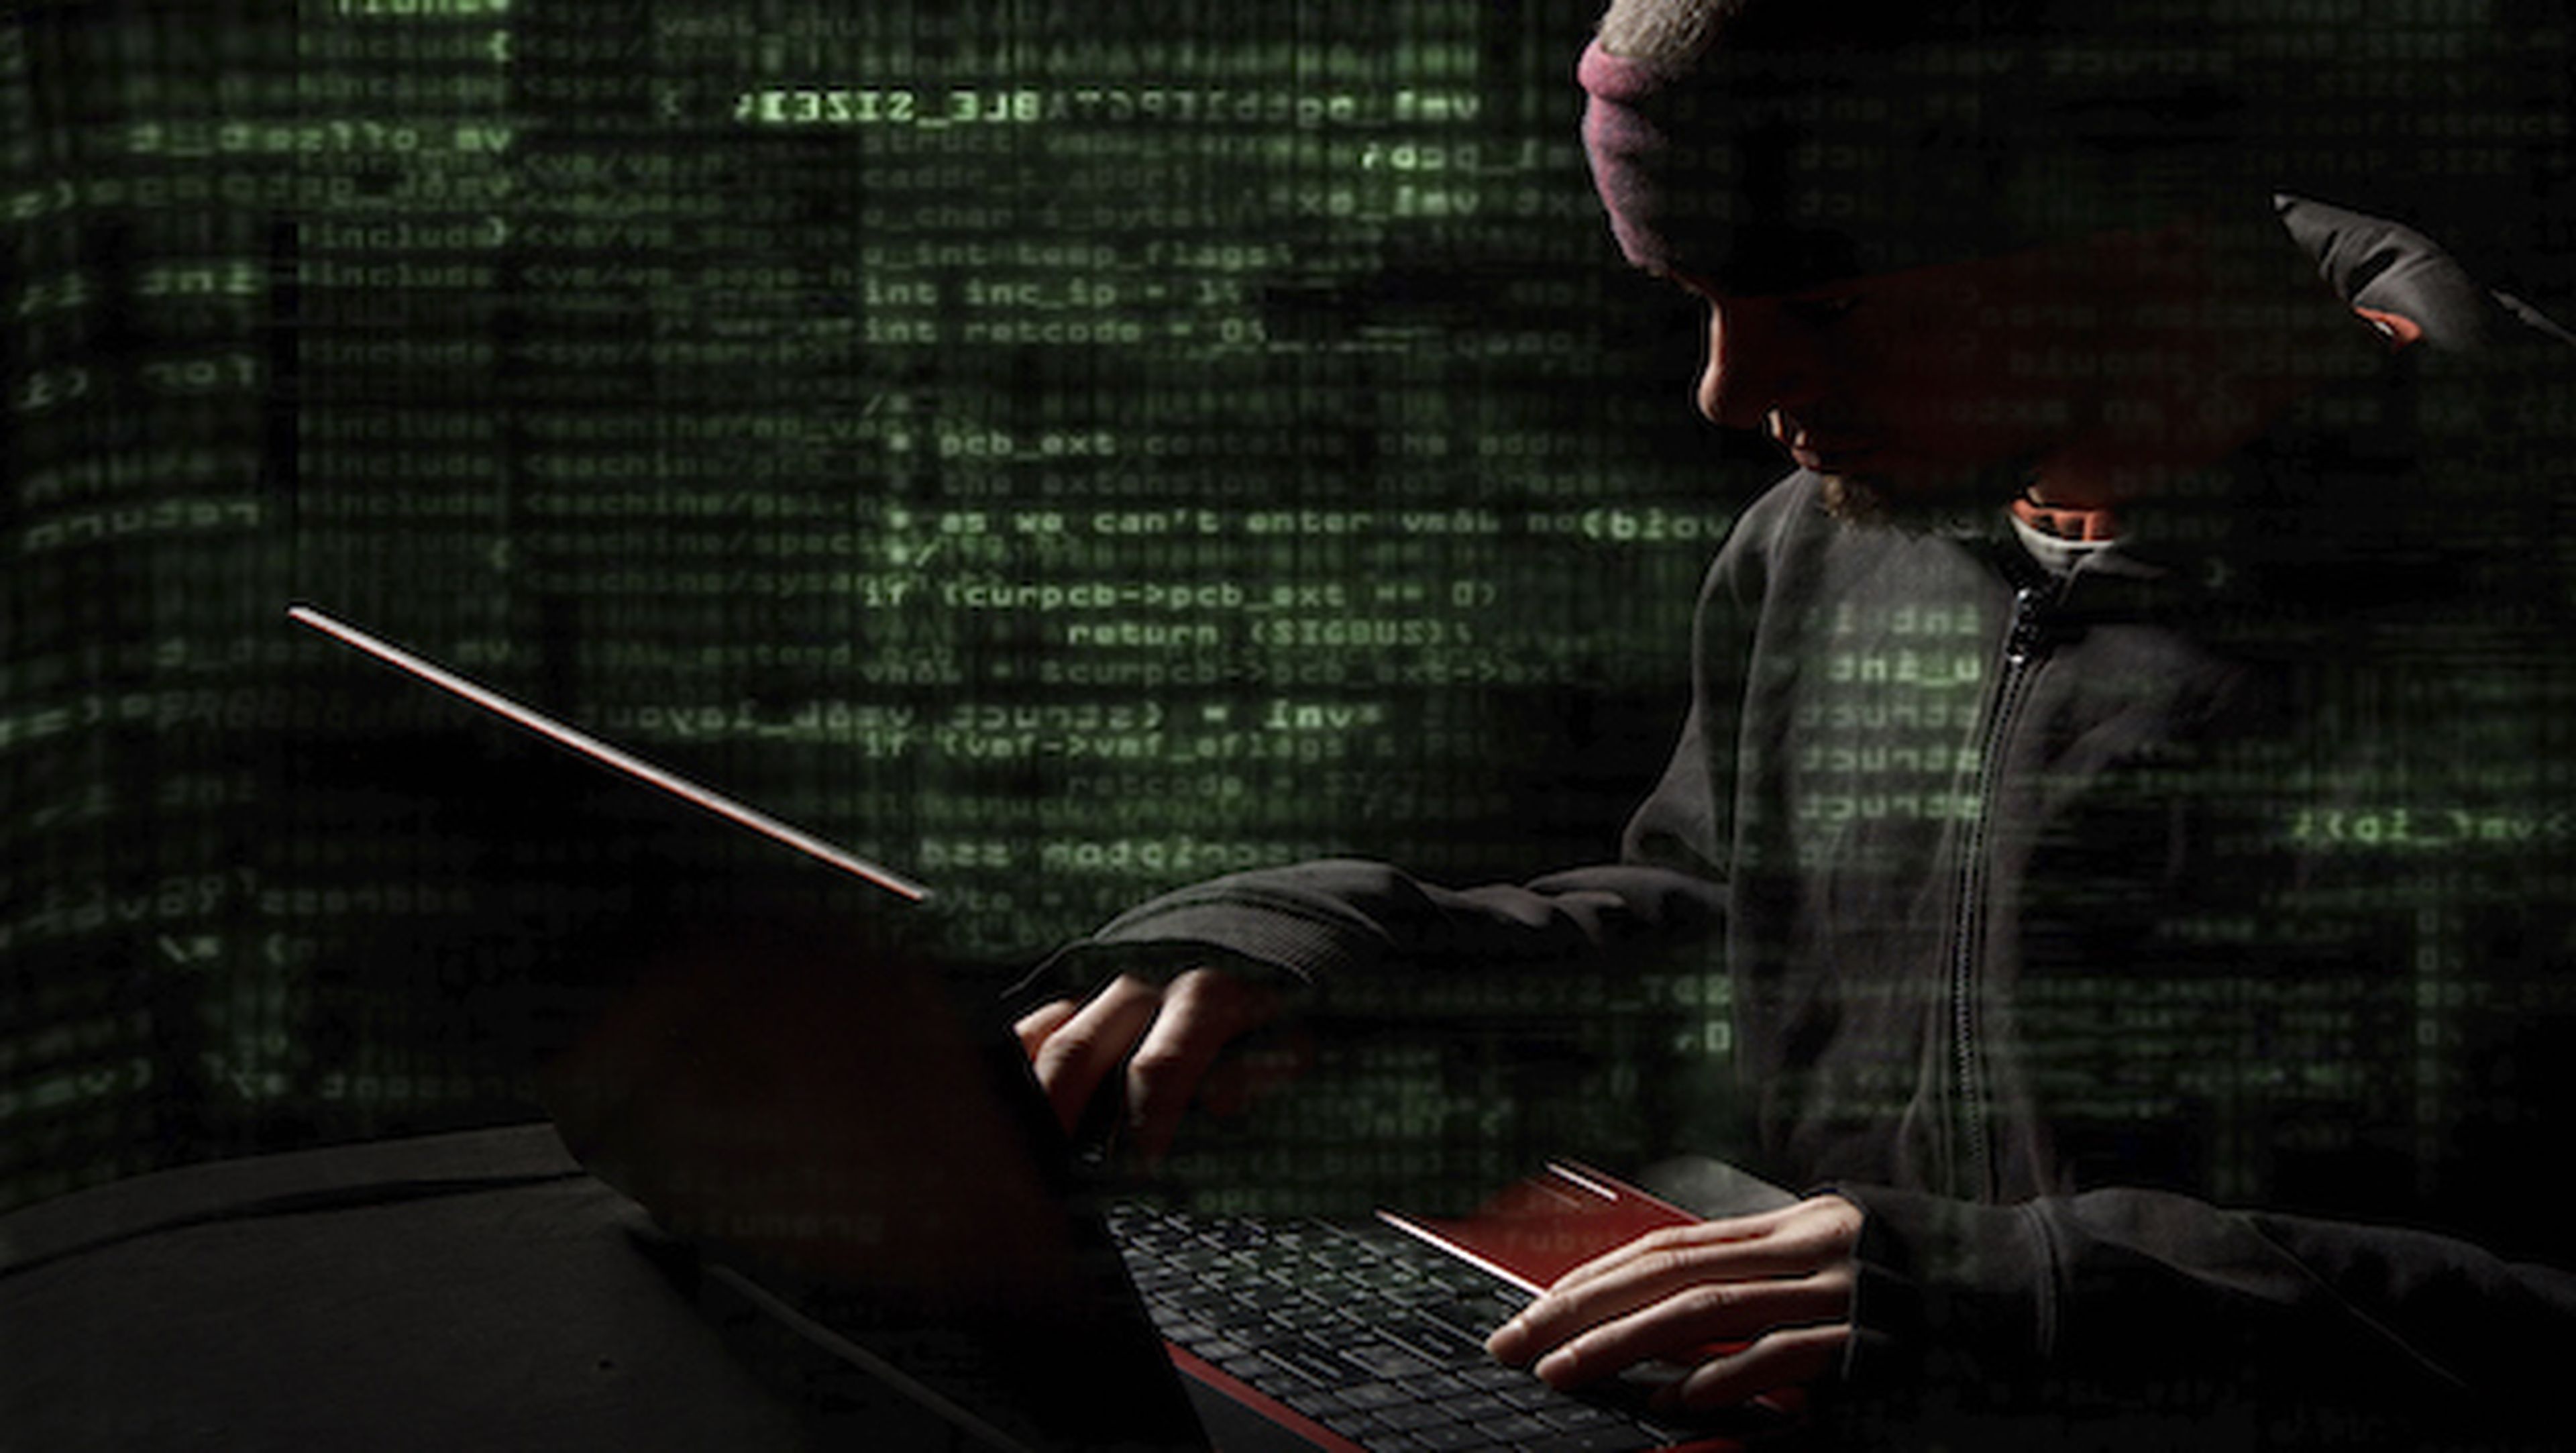 El malware es una de las amenazas que más crece en los últimos tiempos